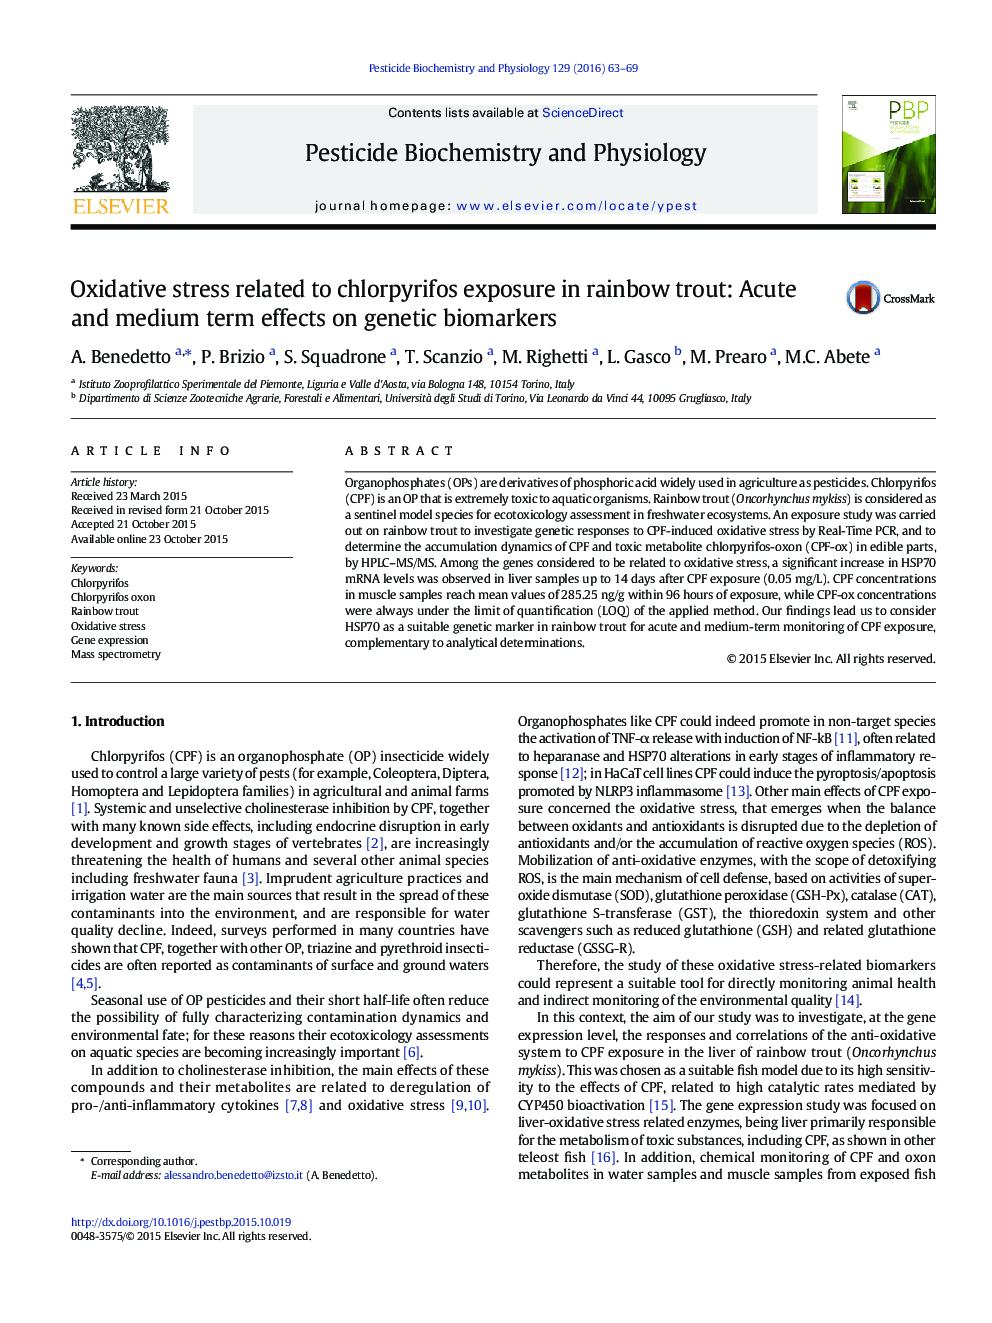 استرس اکسیداتیو مربوط به قرار گرفتن در معرض کلرپیریفوس در ماهی قزل آلای رنگین کمان: اثرات حاد و متوسطه بر روی زیستی ژنتیک 